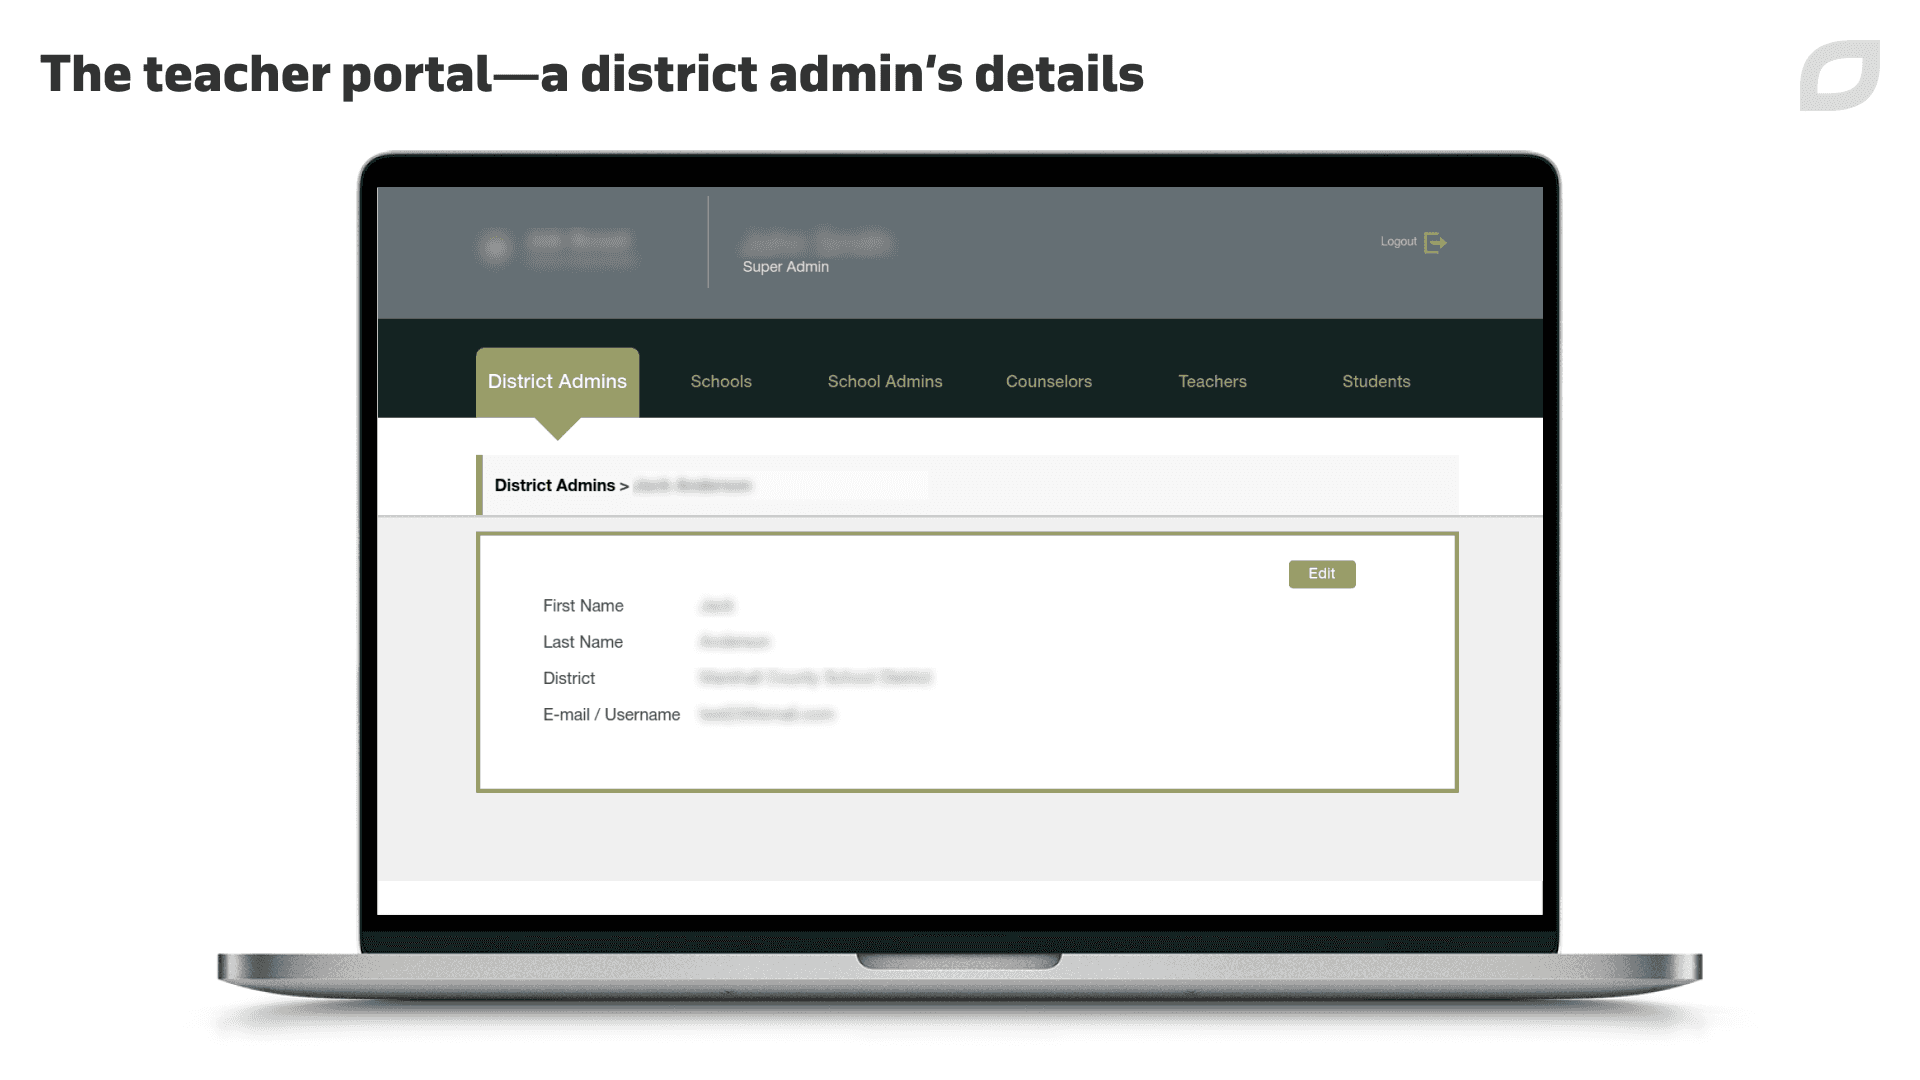 District admins details